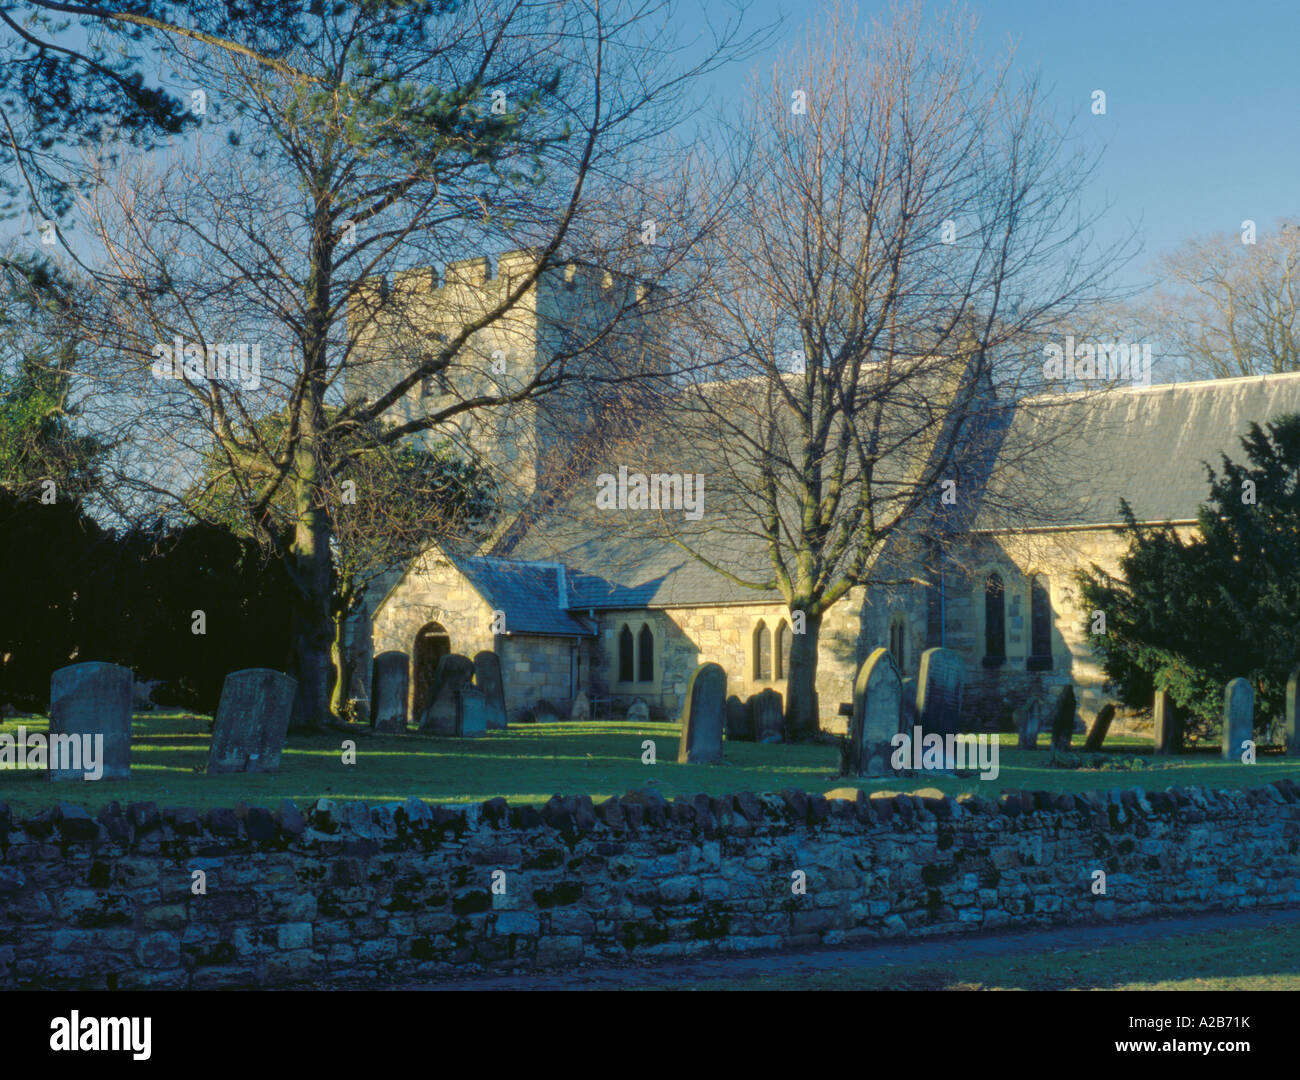 The Church, Longhoughton village, Northumberland, England, UK. Stock Photo